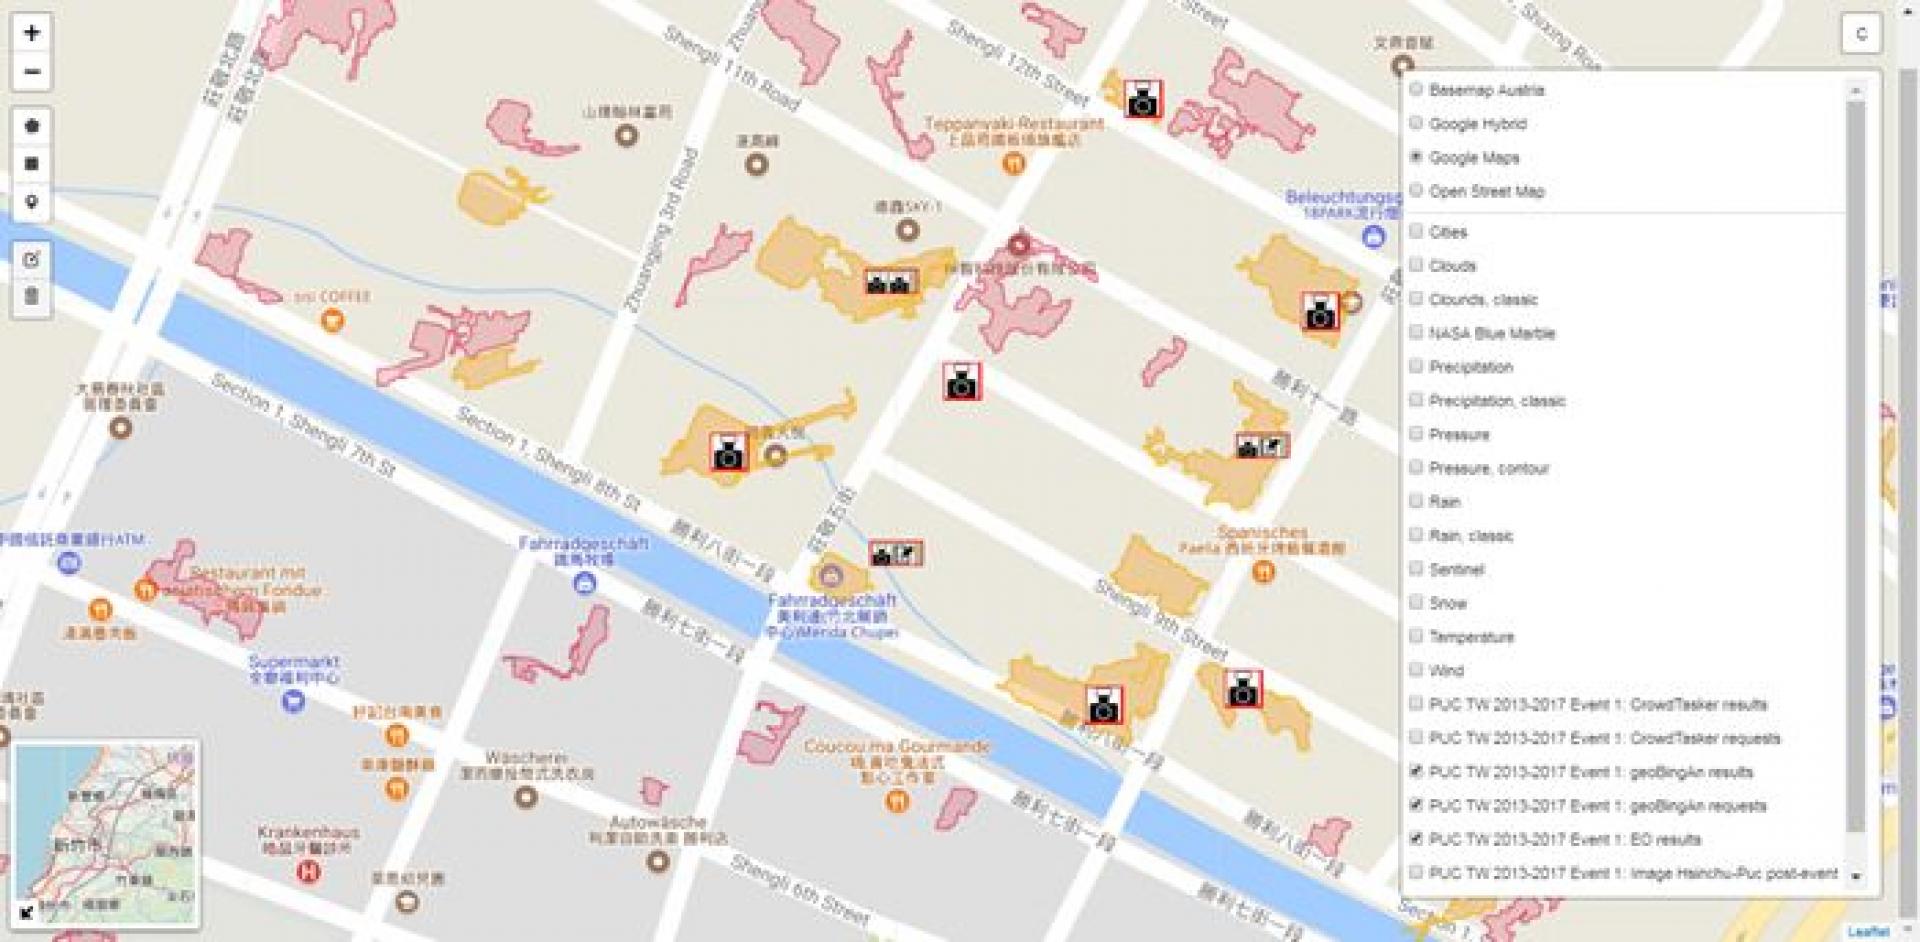 Zones problématiques simulées identifiées dans des images satellite et vérifiées par des bénévoles